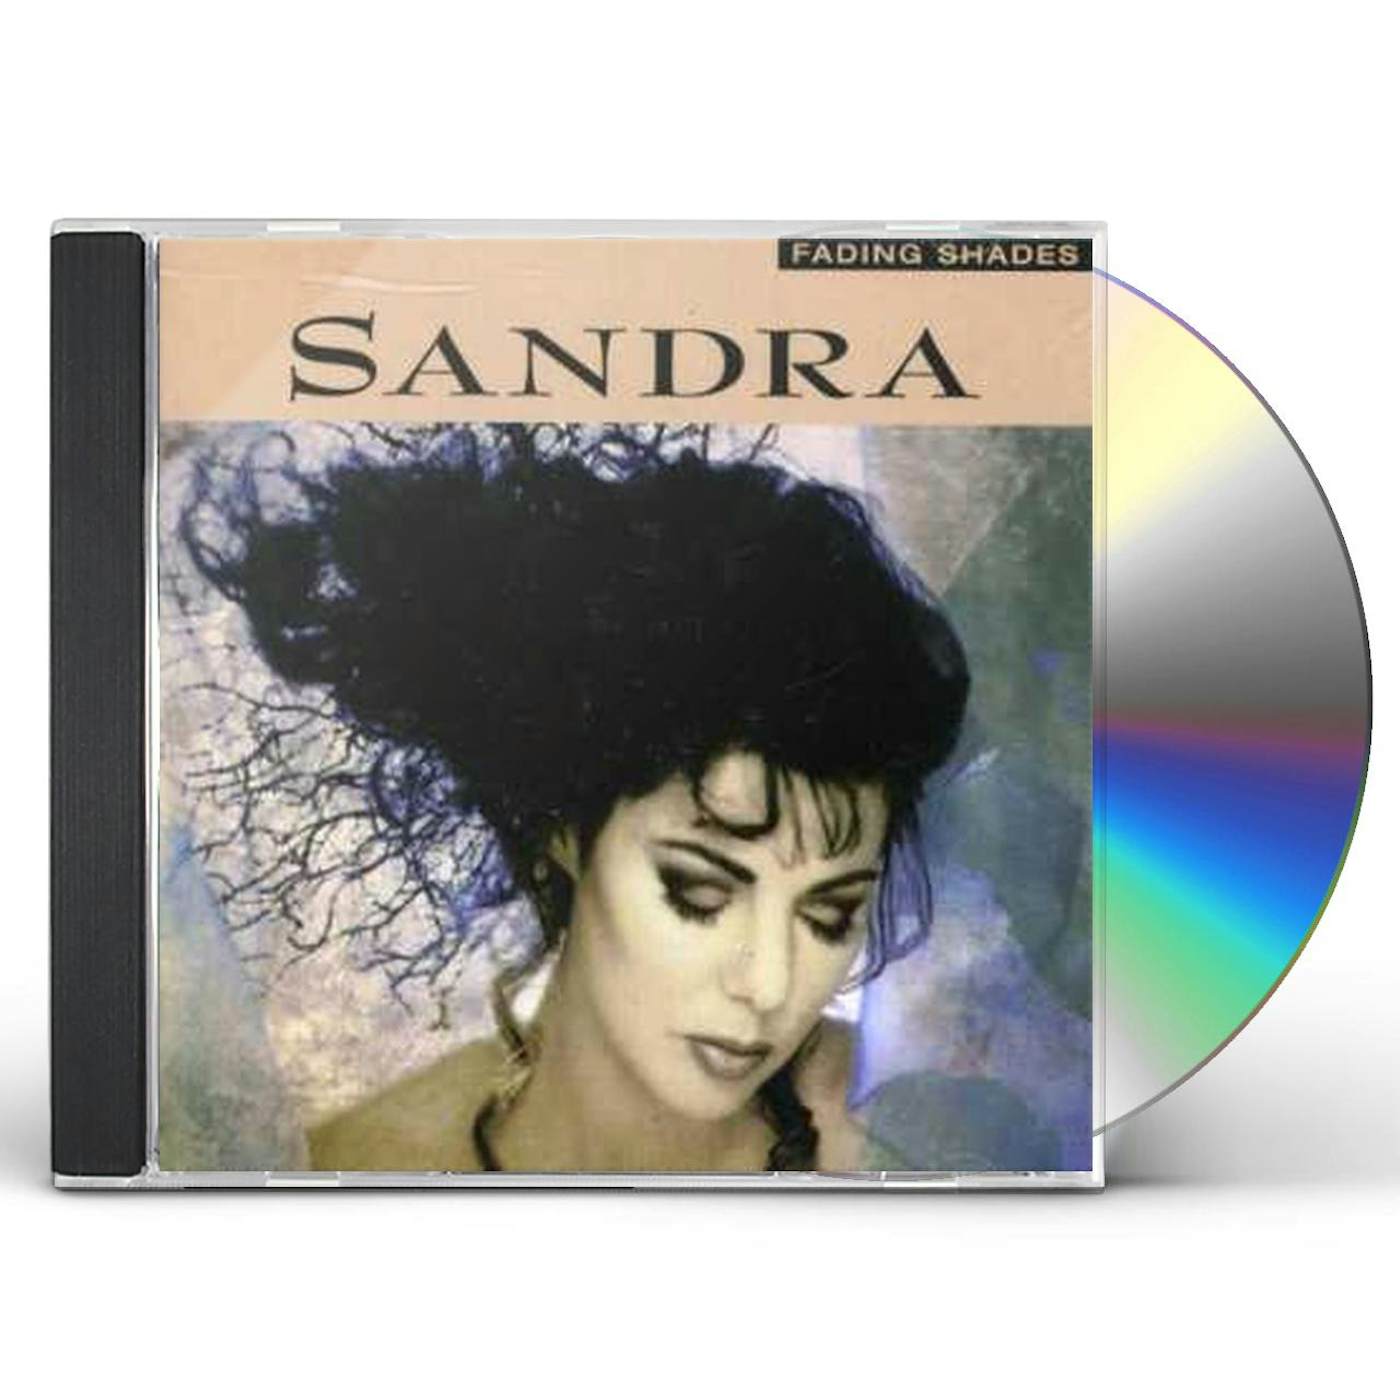 Sandra FADING SHADES CD